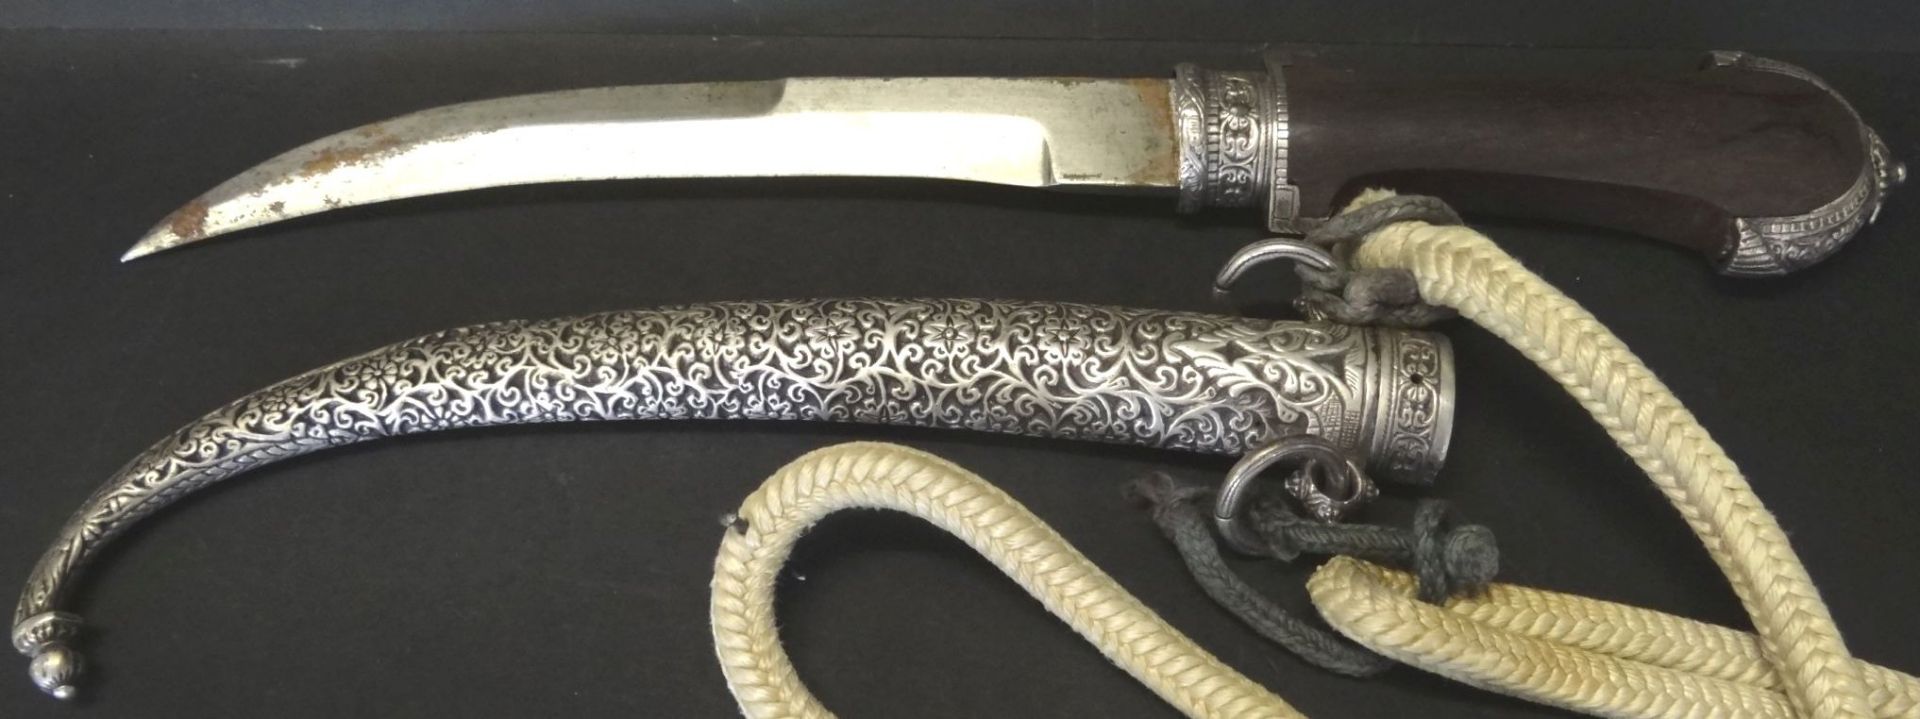 alter Krummdolch, wohl Silberscheide, arabisch signiert, L-40 cm, massive Ausführun